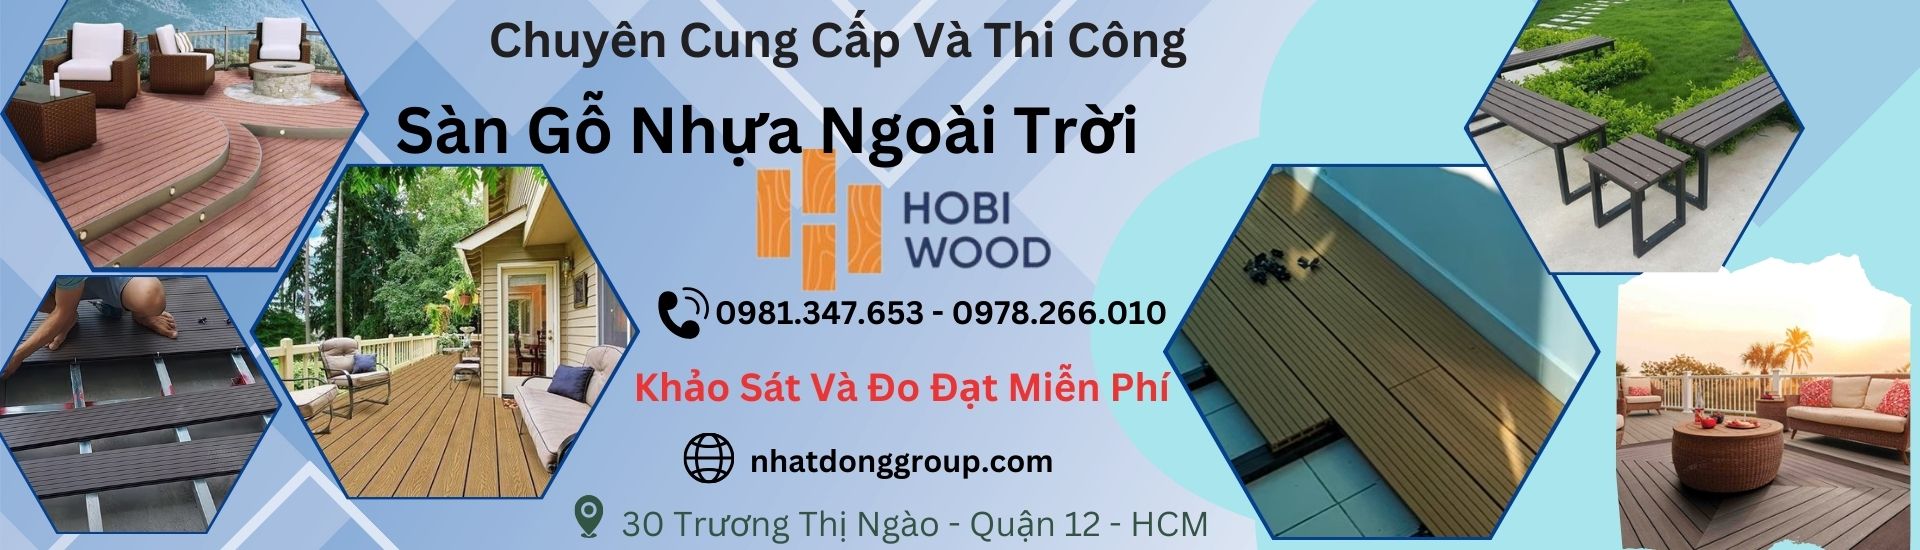 Sàn gỗ nhựa ngoài trời Hobi Wood đẹp, chính hãng Tại Hồ Chí Minh,Long An , Bình Dương, Đồng Nai, Cần Thơ, Bạc Liêu